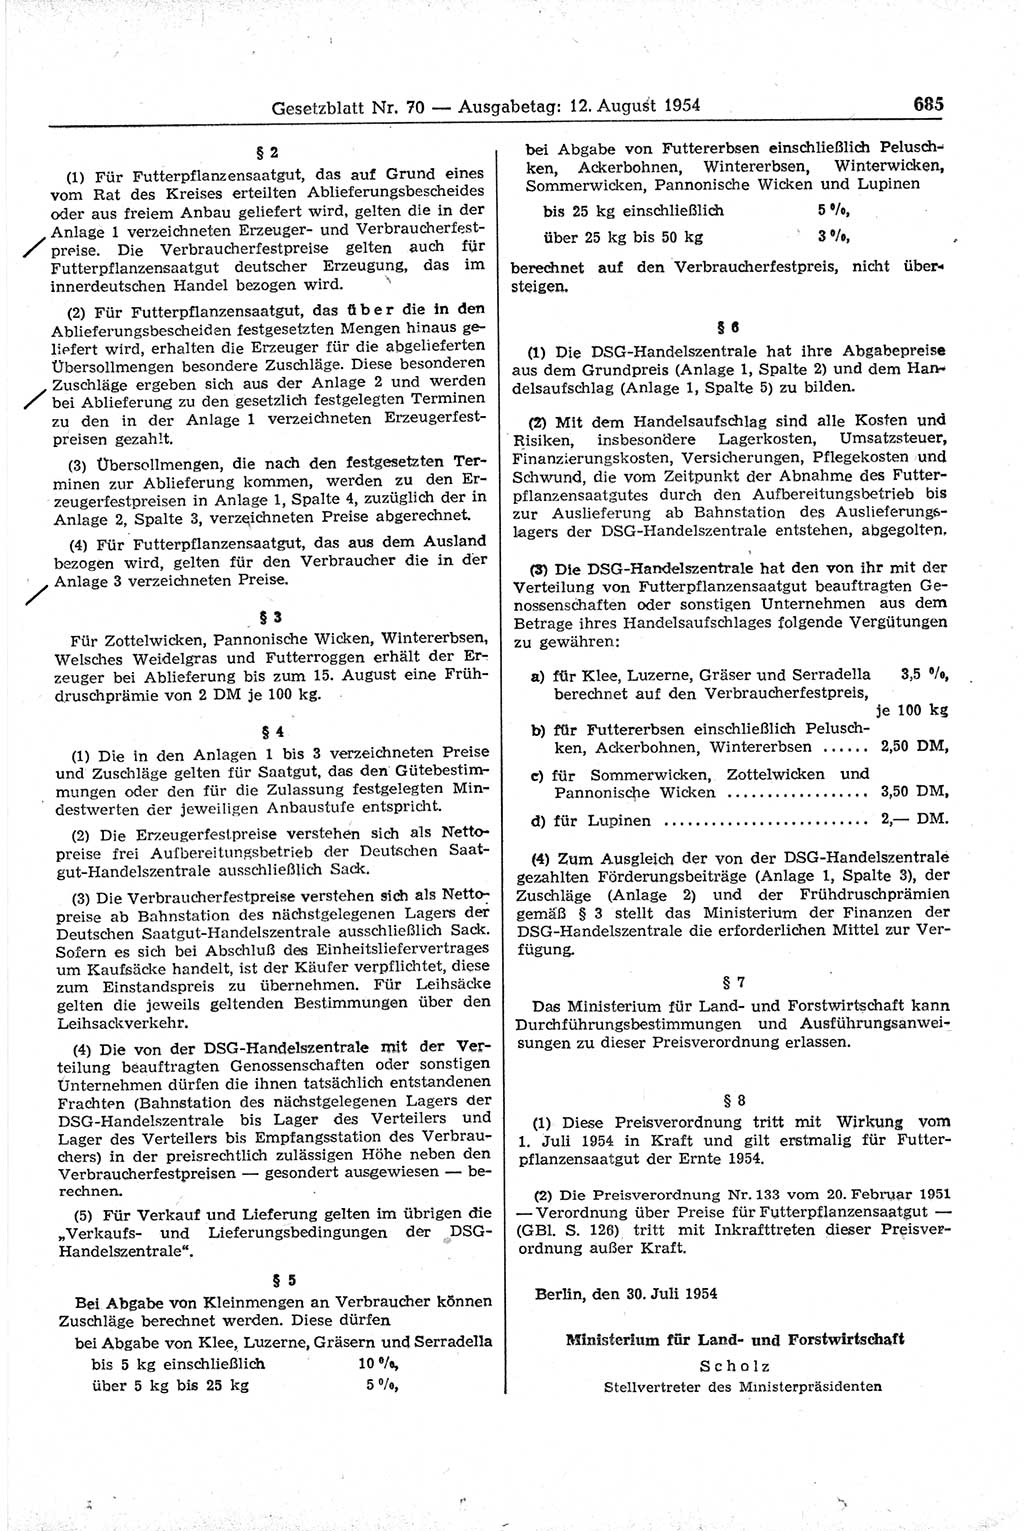 Gesetzblatt (GBl.) der Deutschen Demokratischen Republik (DDR) 1954, Seite 685 (GBl. DDR 1954, S. 685)